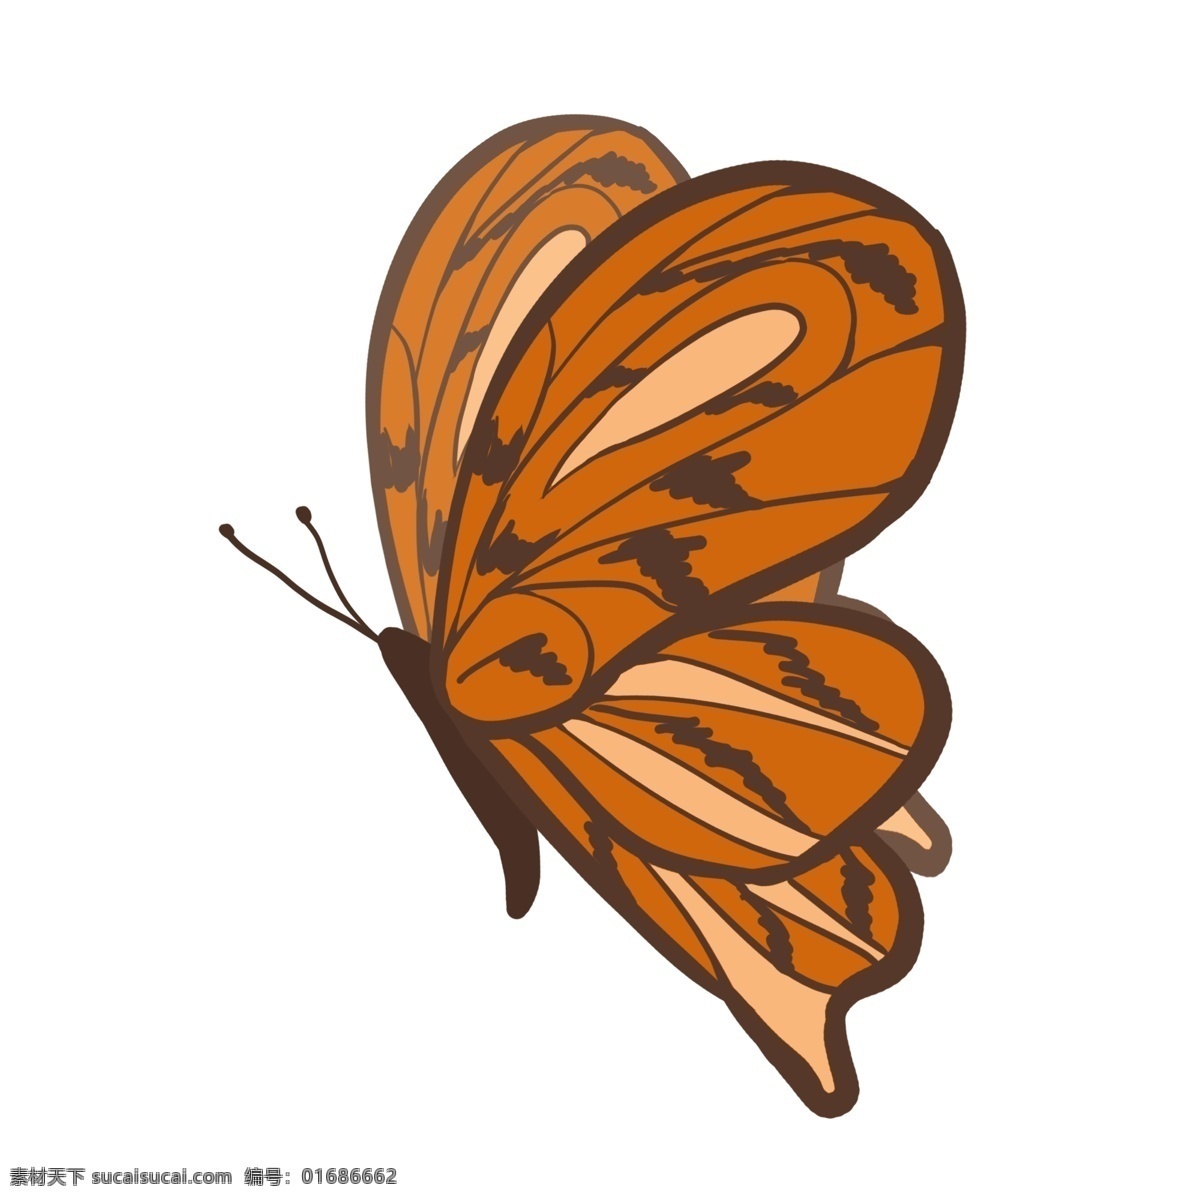 漂亮蝴蝶 蝴蝶 可爱 昆虫 卡通 简洁 漂亮